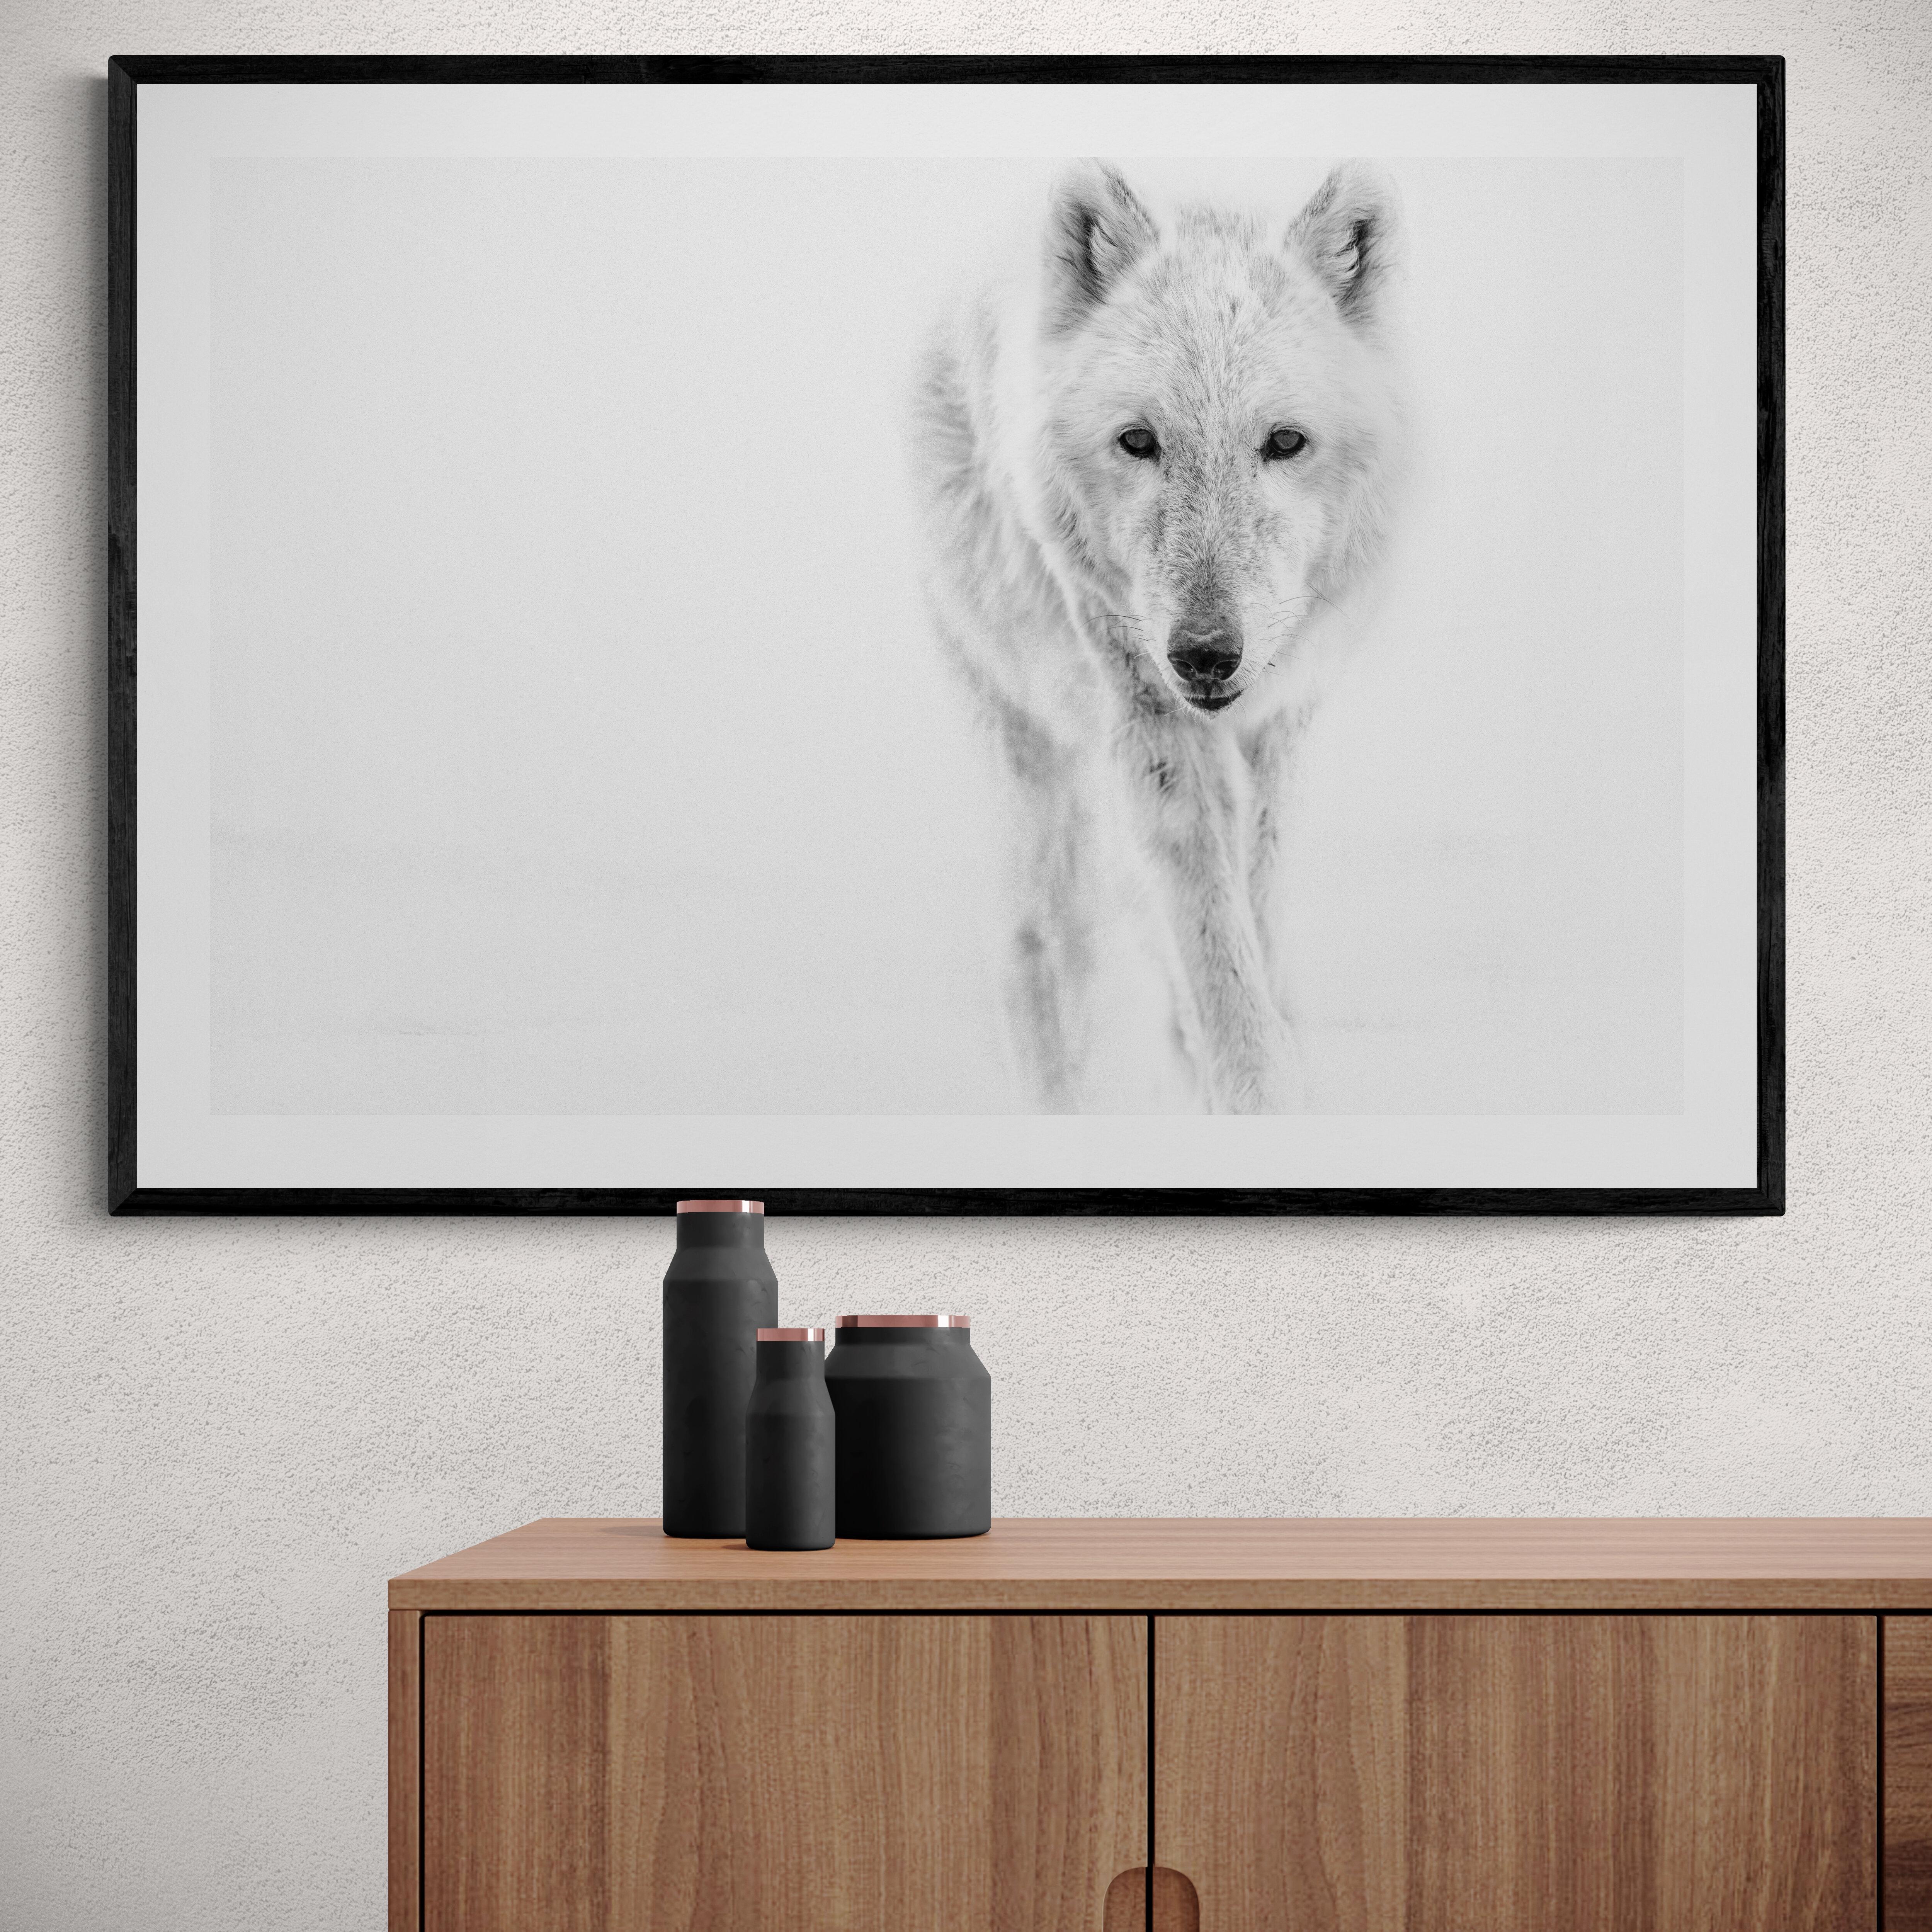 Dies ist eine zeitgenössische Schwarz-Weiß-Fotografie eines Polarwolfs.
Gedruckt auf Archivpapier, das nur mit Archivtinte bedruckt ist. 
Einrahmung verfügbar. Erkundigen Sie sich nach den Preisen. 
Signierte Auflage von 12 Stück

 Shane Russeck hat